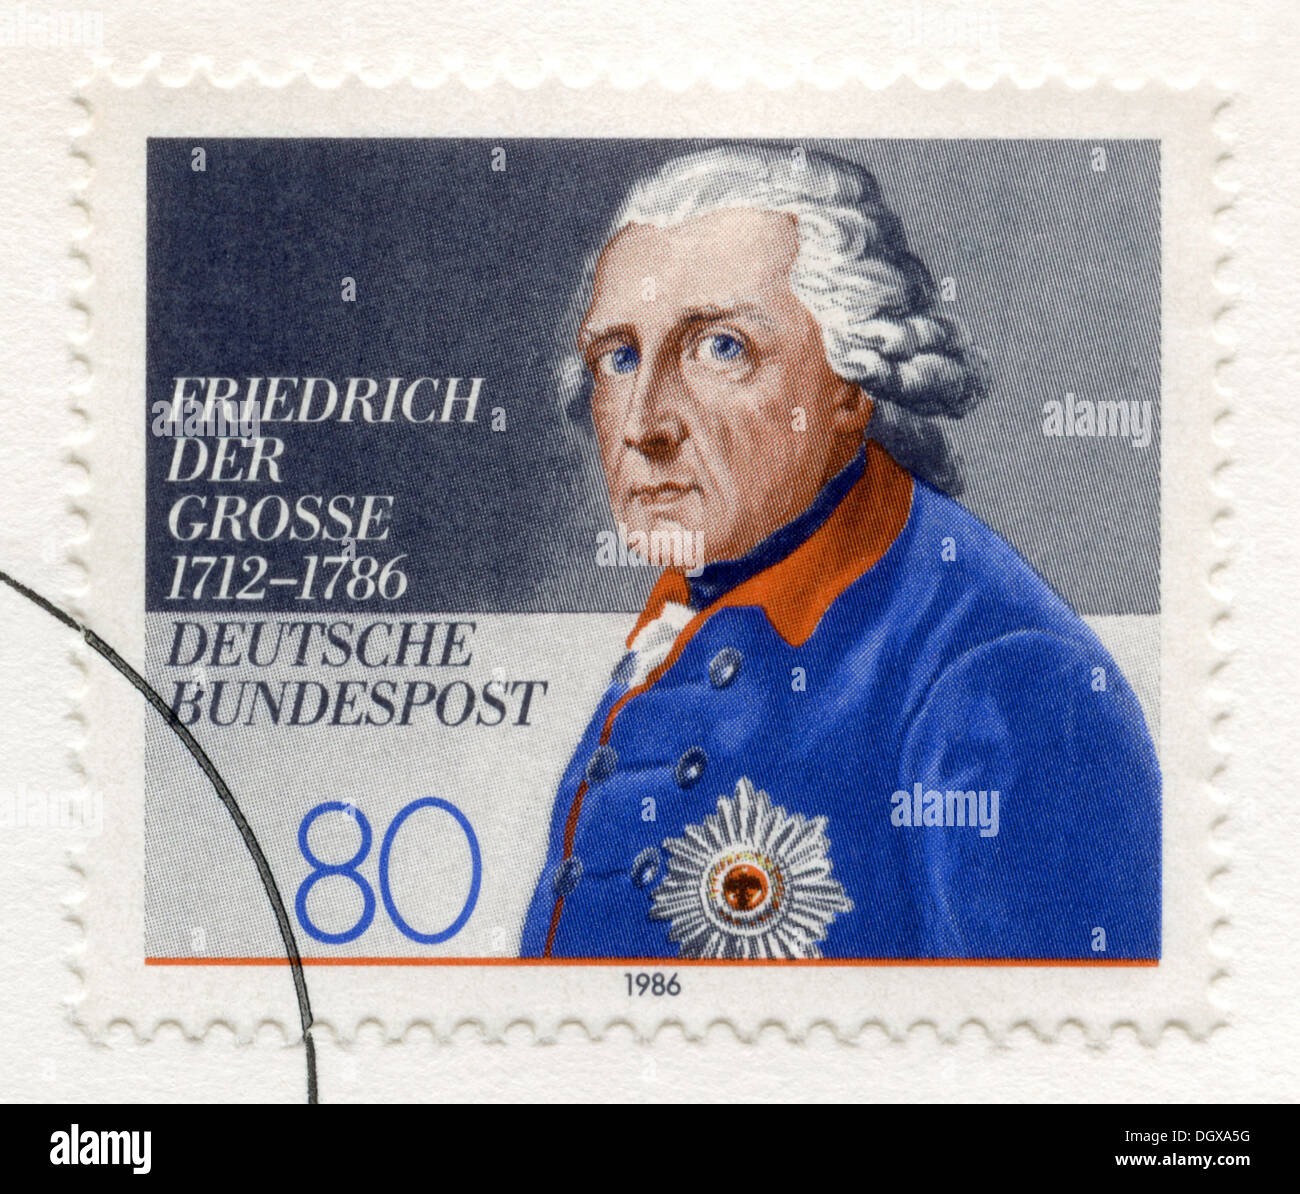 Allemagne timbre-poste représentant le roi Frédéric II de Prusse Banque D'Images